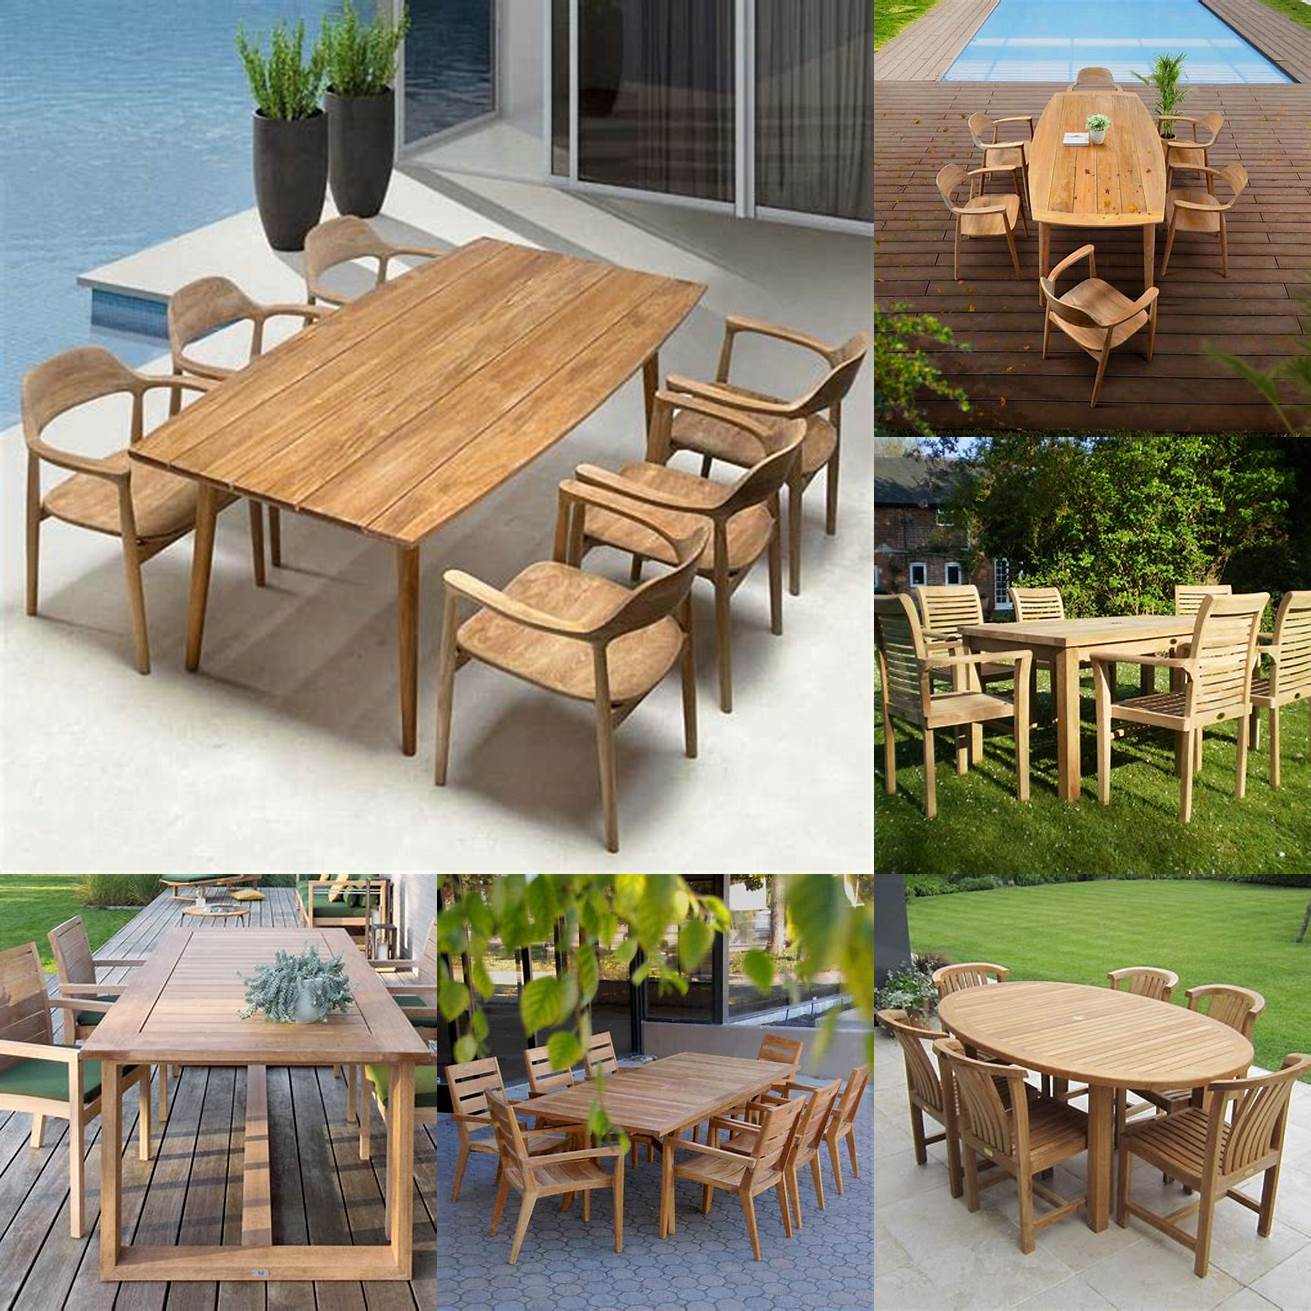 A contemporary teak garden table